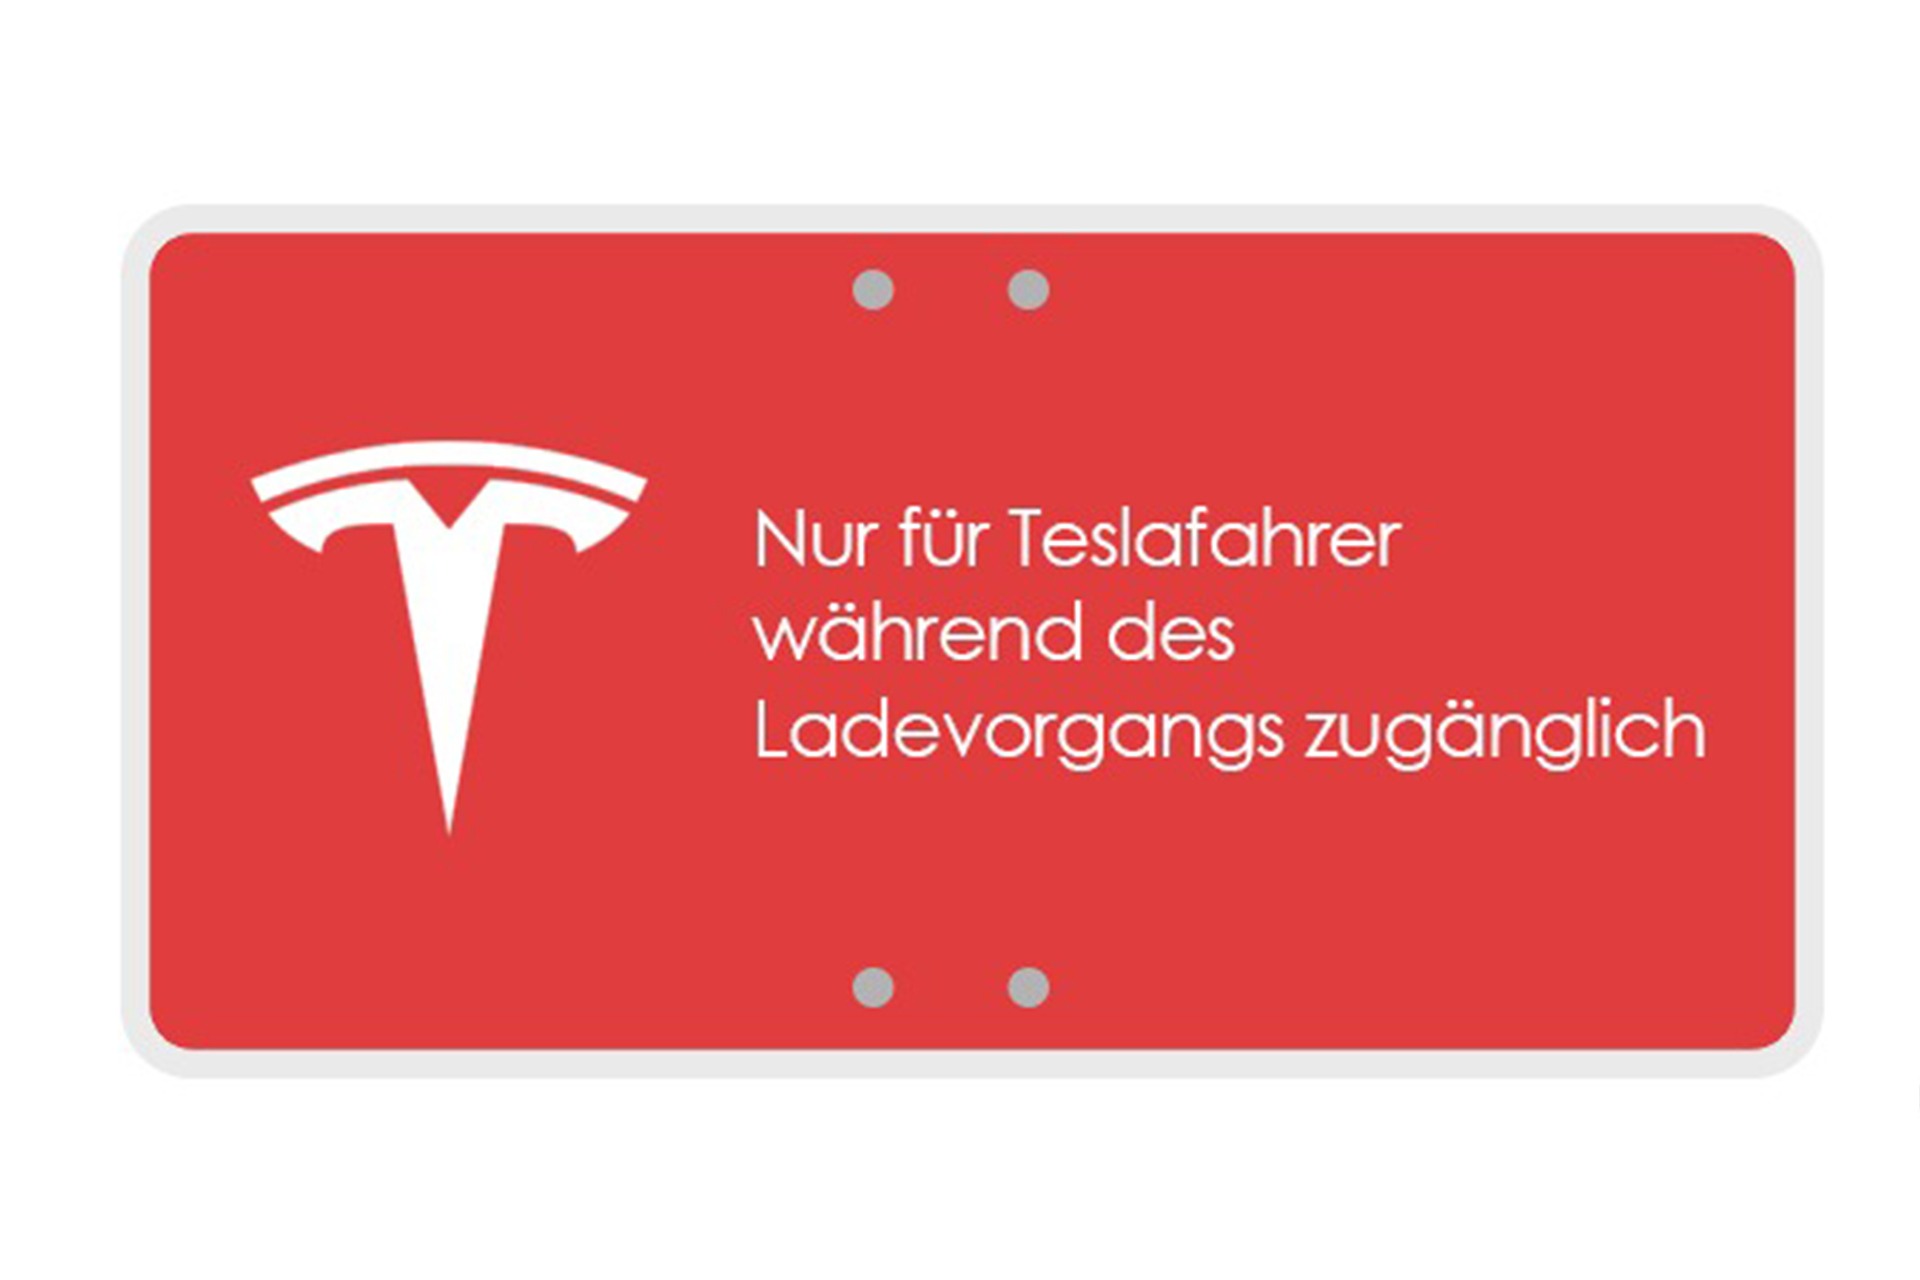 Foto: Tesla-Hinweisschild "Nur für Teslafahrer während des Ladevorgangs zugänglich" | © Greenspeed.de